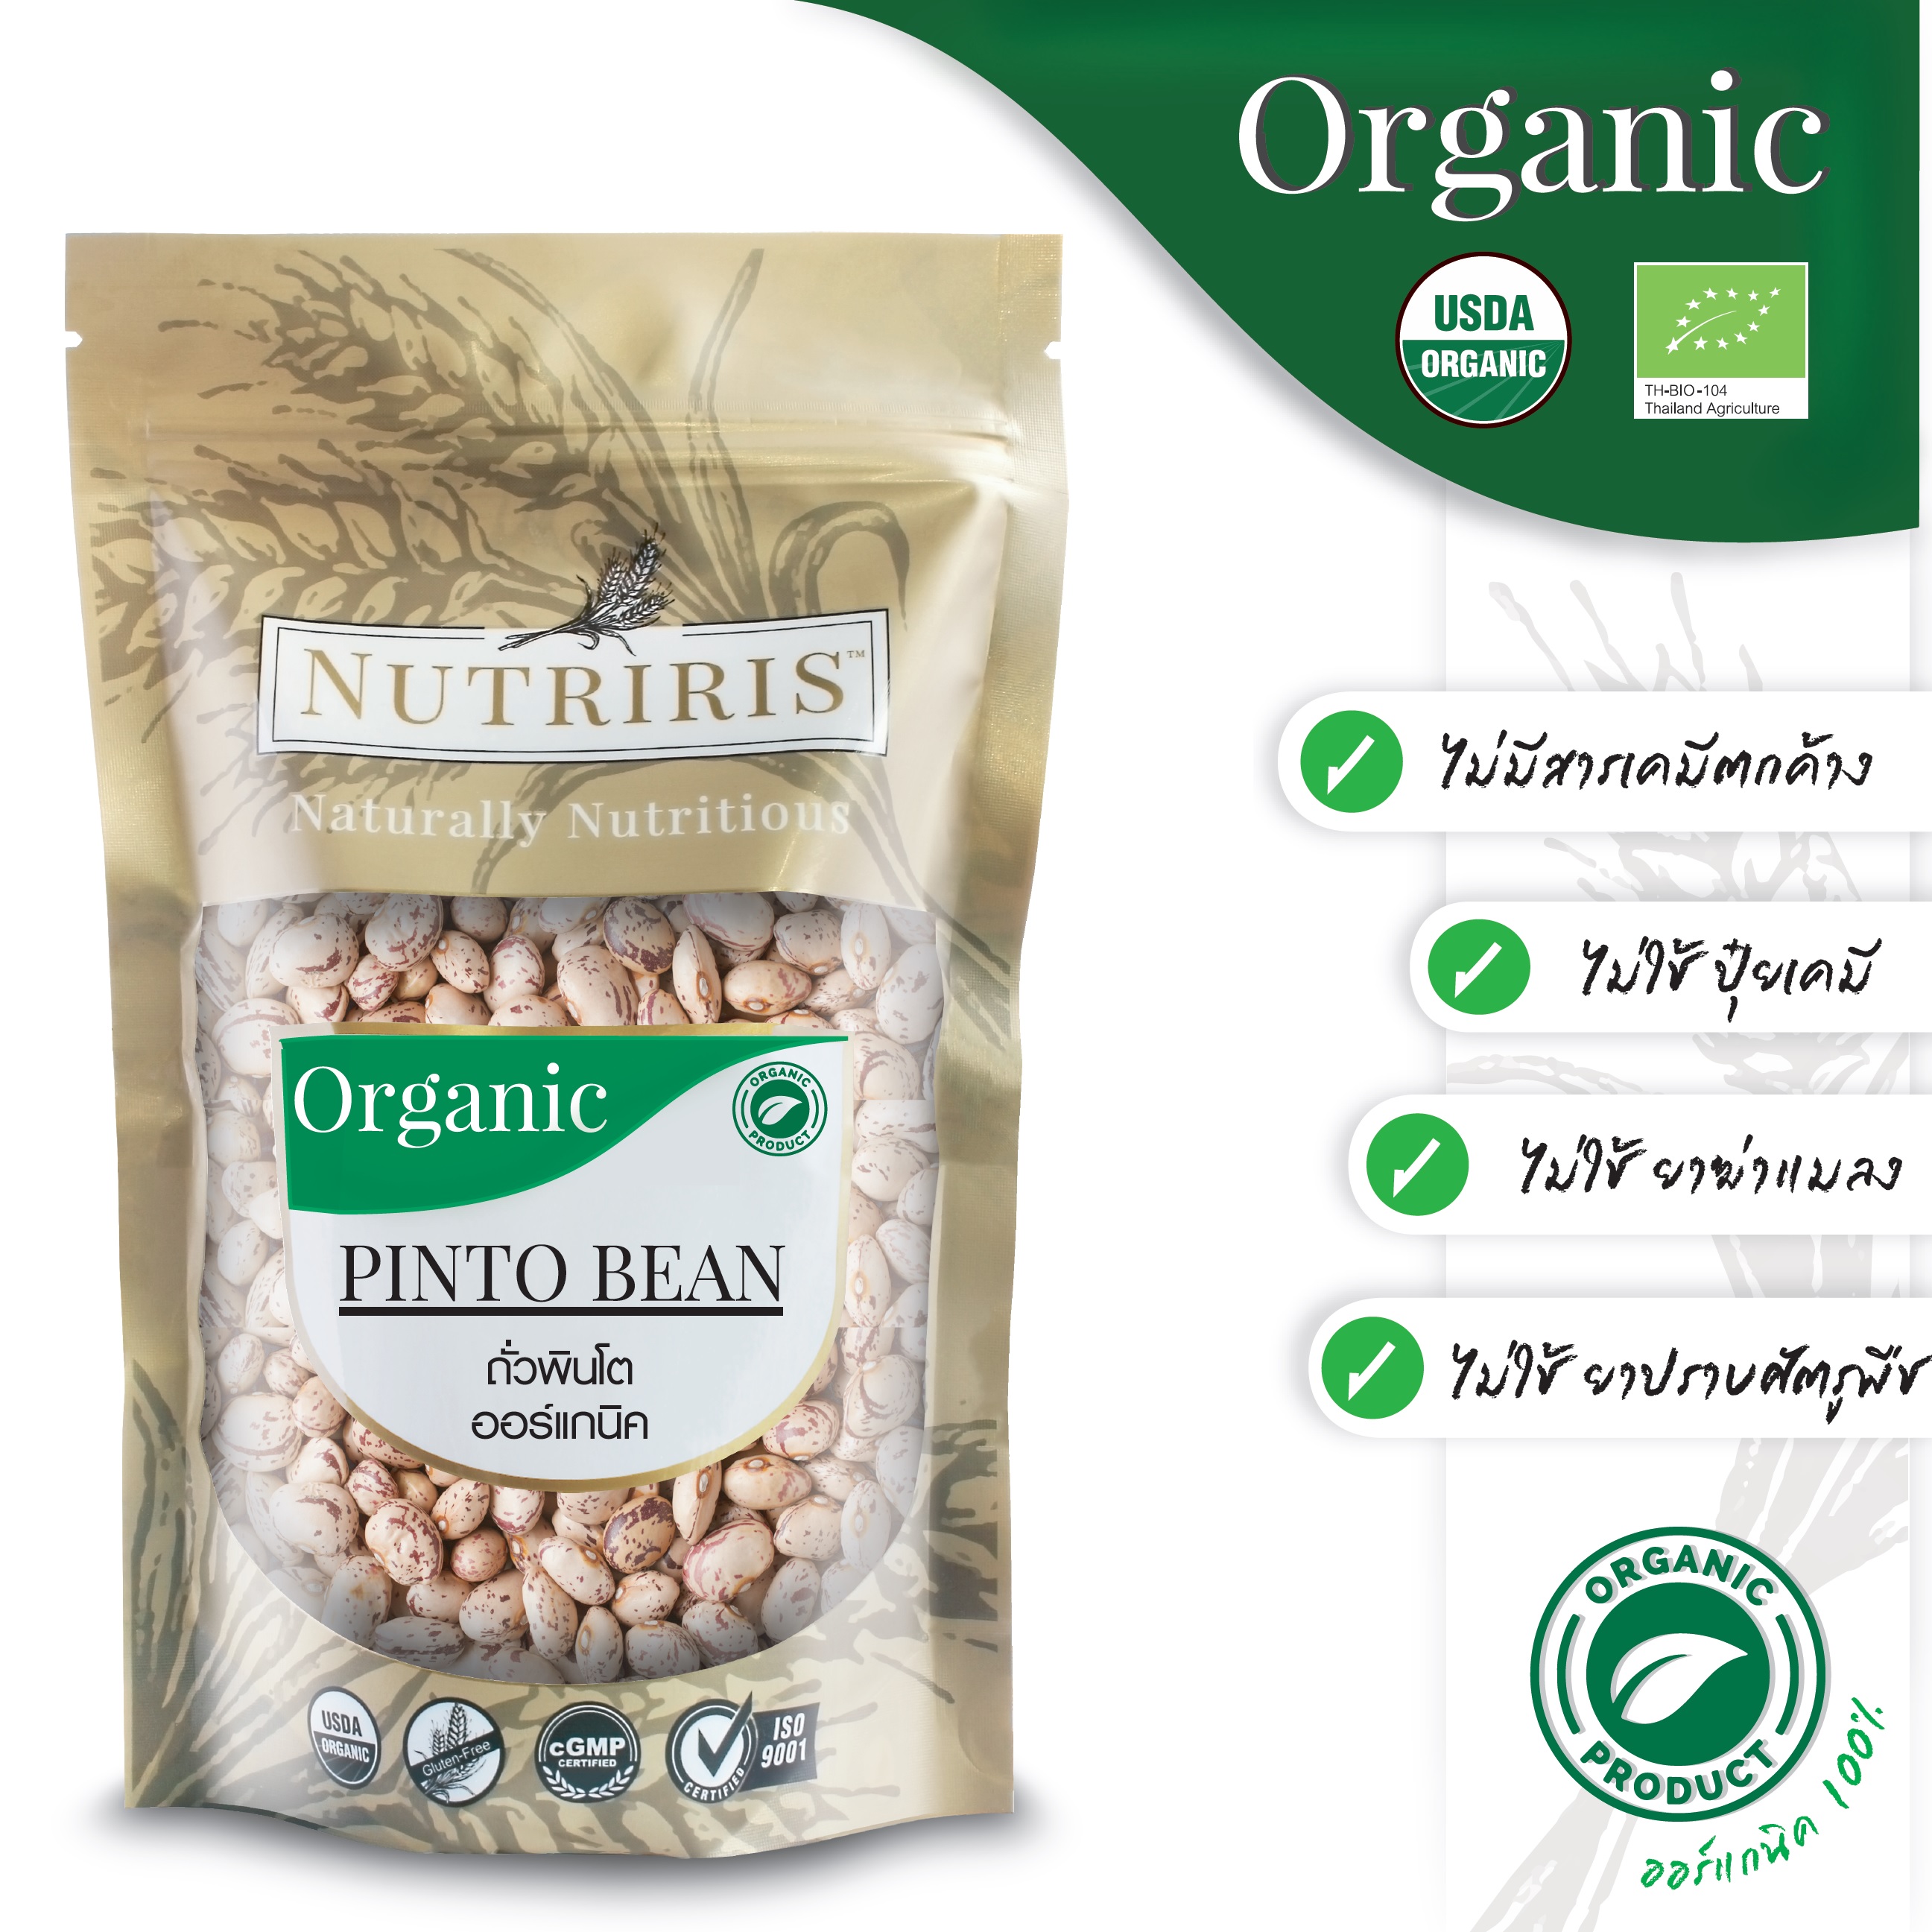 ถั่วพินโต้ ถั่วปินโต้ 350 กรัม ออร์แกนิค100% ปลอดสารเคมีตกค้าง จากเปรู ( Oraganic Pinto Beans ) NUTRIRIS Brand